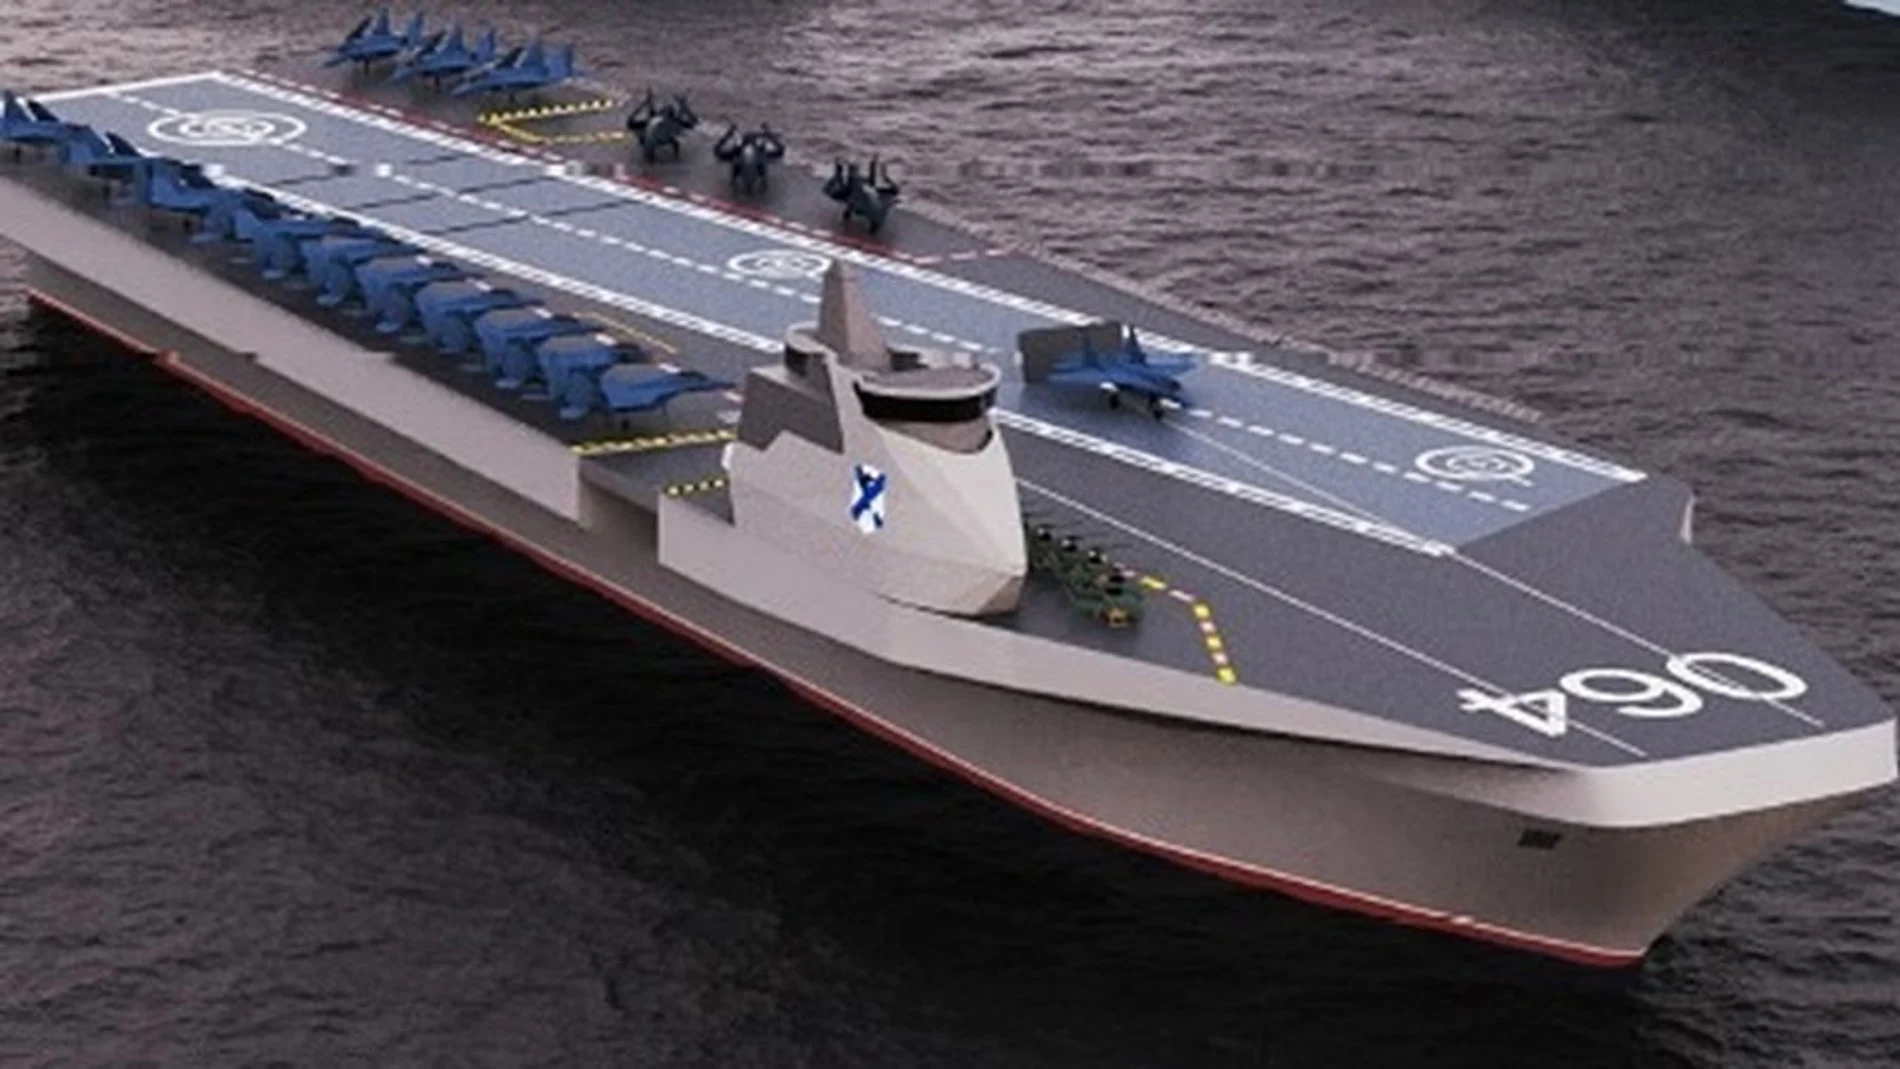 Su máximo de desplazamiento, aproximado a 45.000 toneladas, es similar a los barcos de clase estadounidense de Estados Unidos